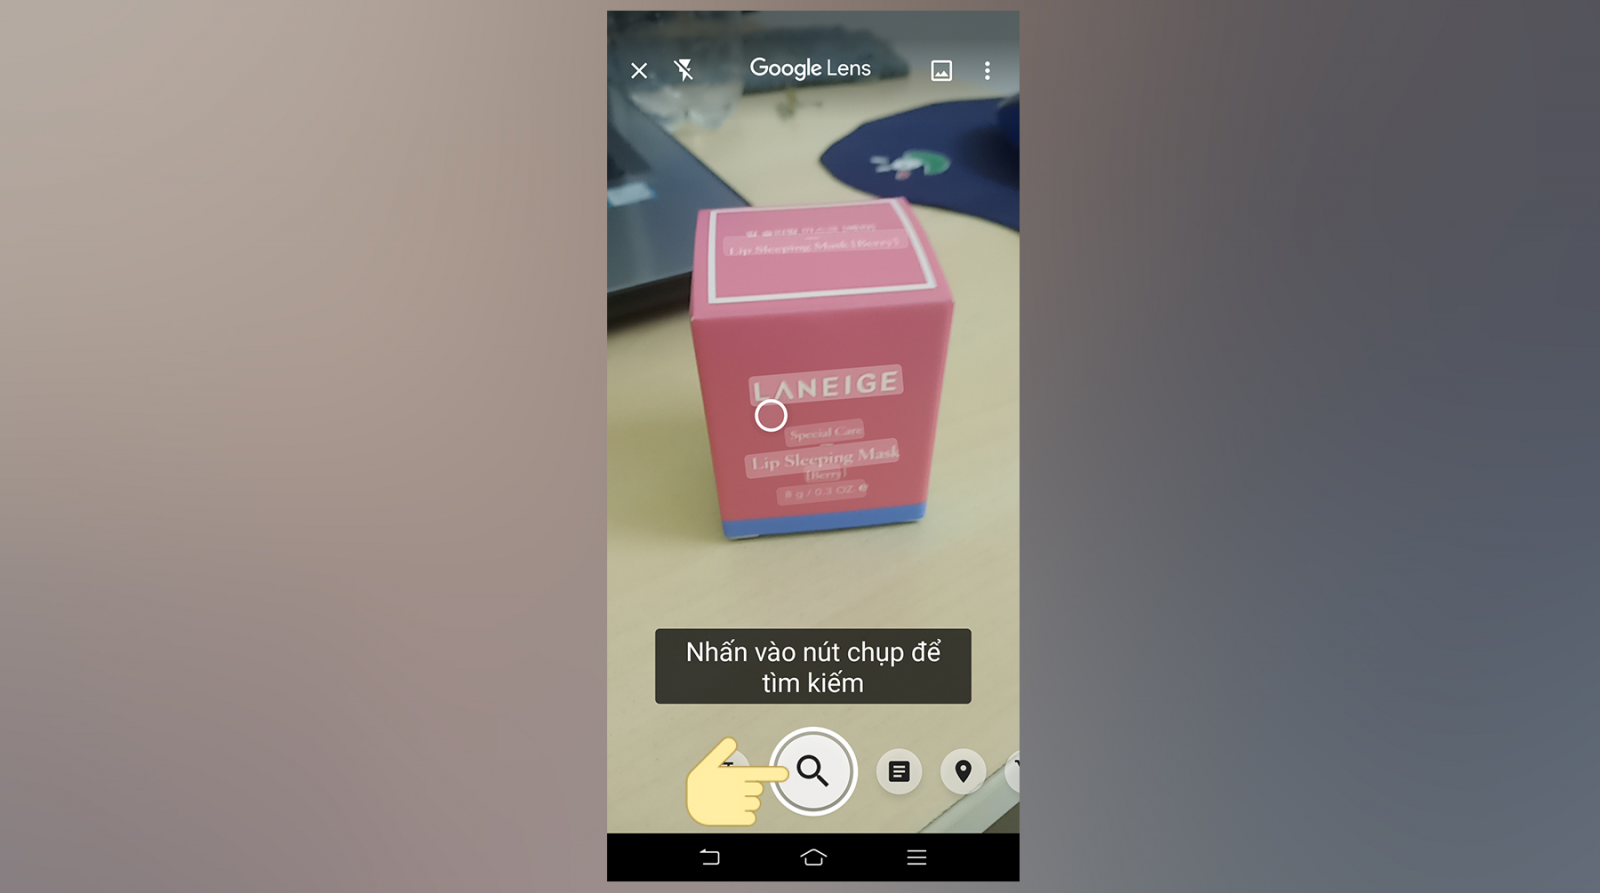 Google Ống Kính là 1 khí cụ giúp đỡ bạn lần tìm tòi vấn đề hình hình họa nhanh gọn lẹ bên trên điện thoại cảm ứng Android